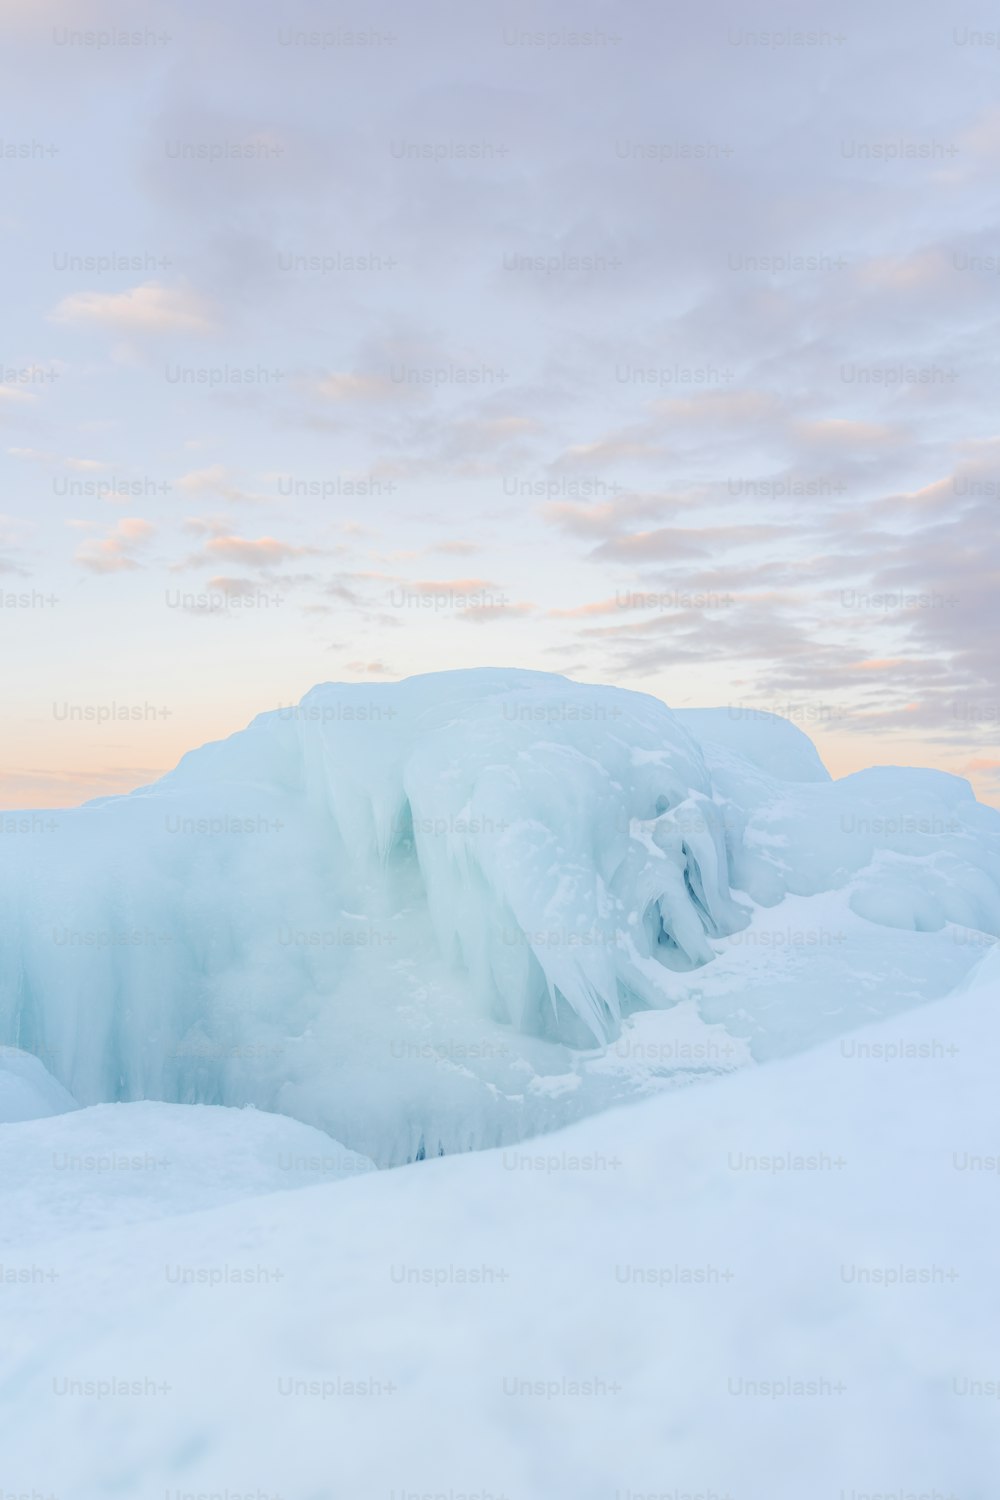 Ein sehr großer Eisberg inmitten eines verschneiten Feldes